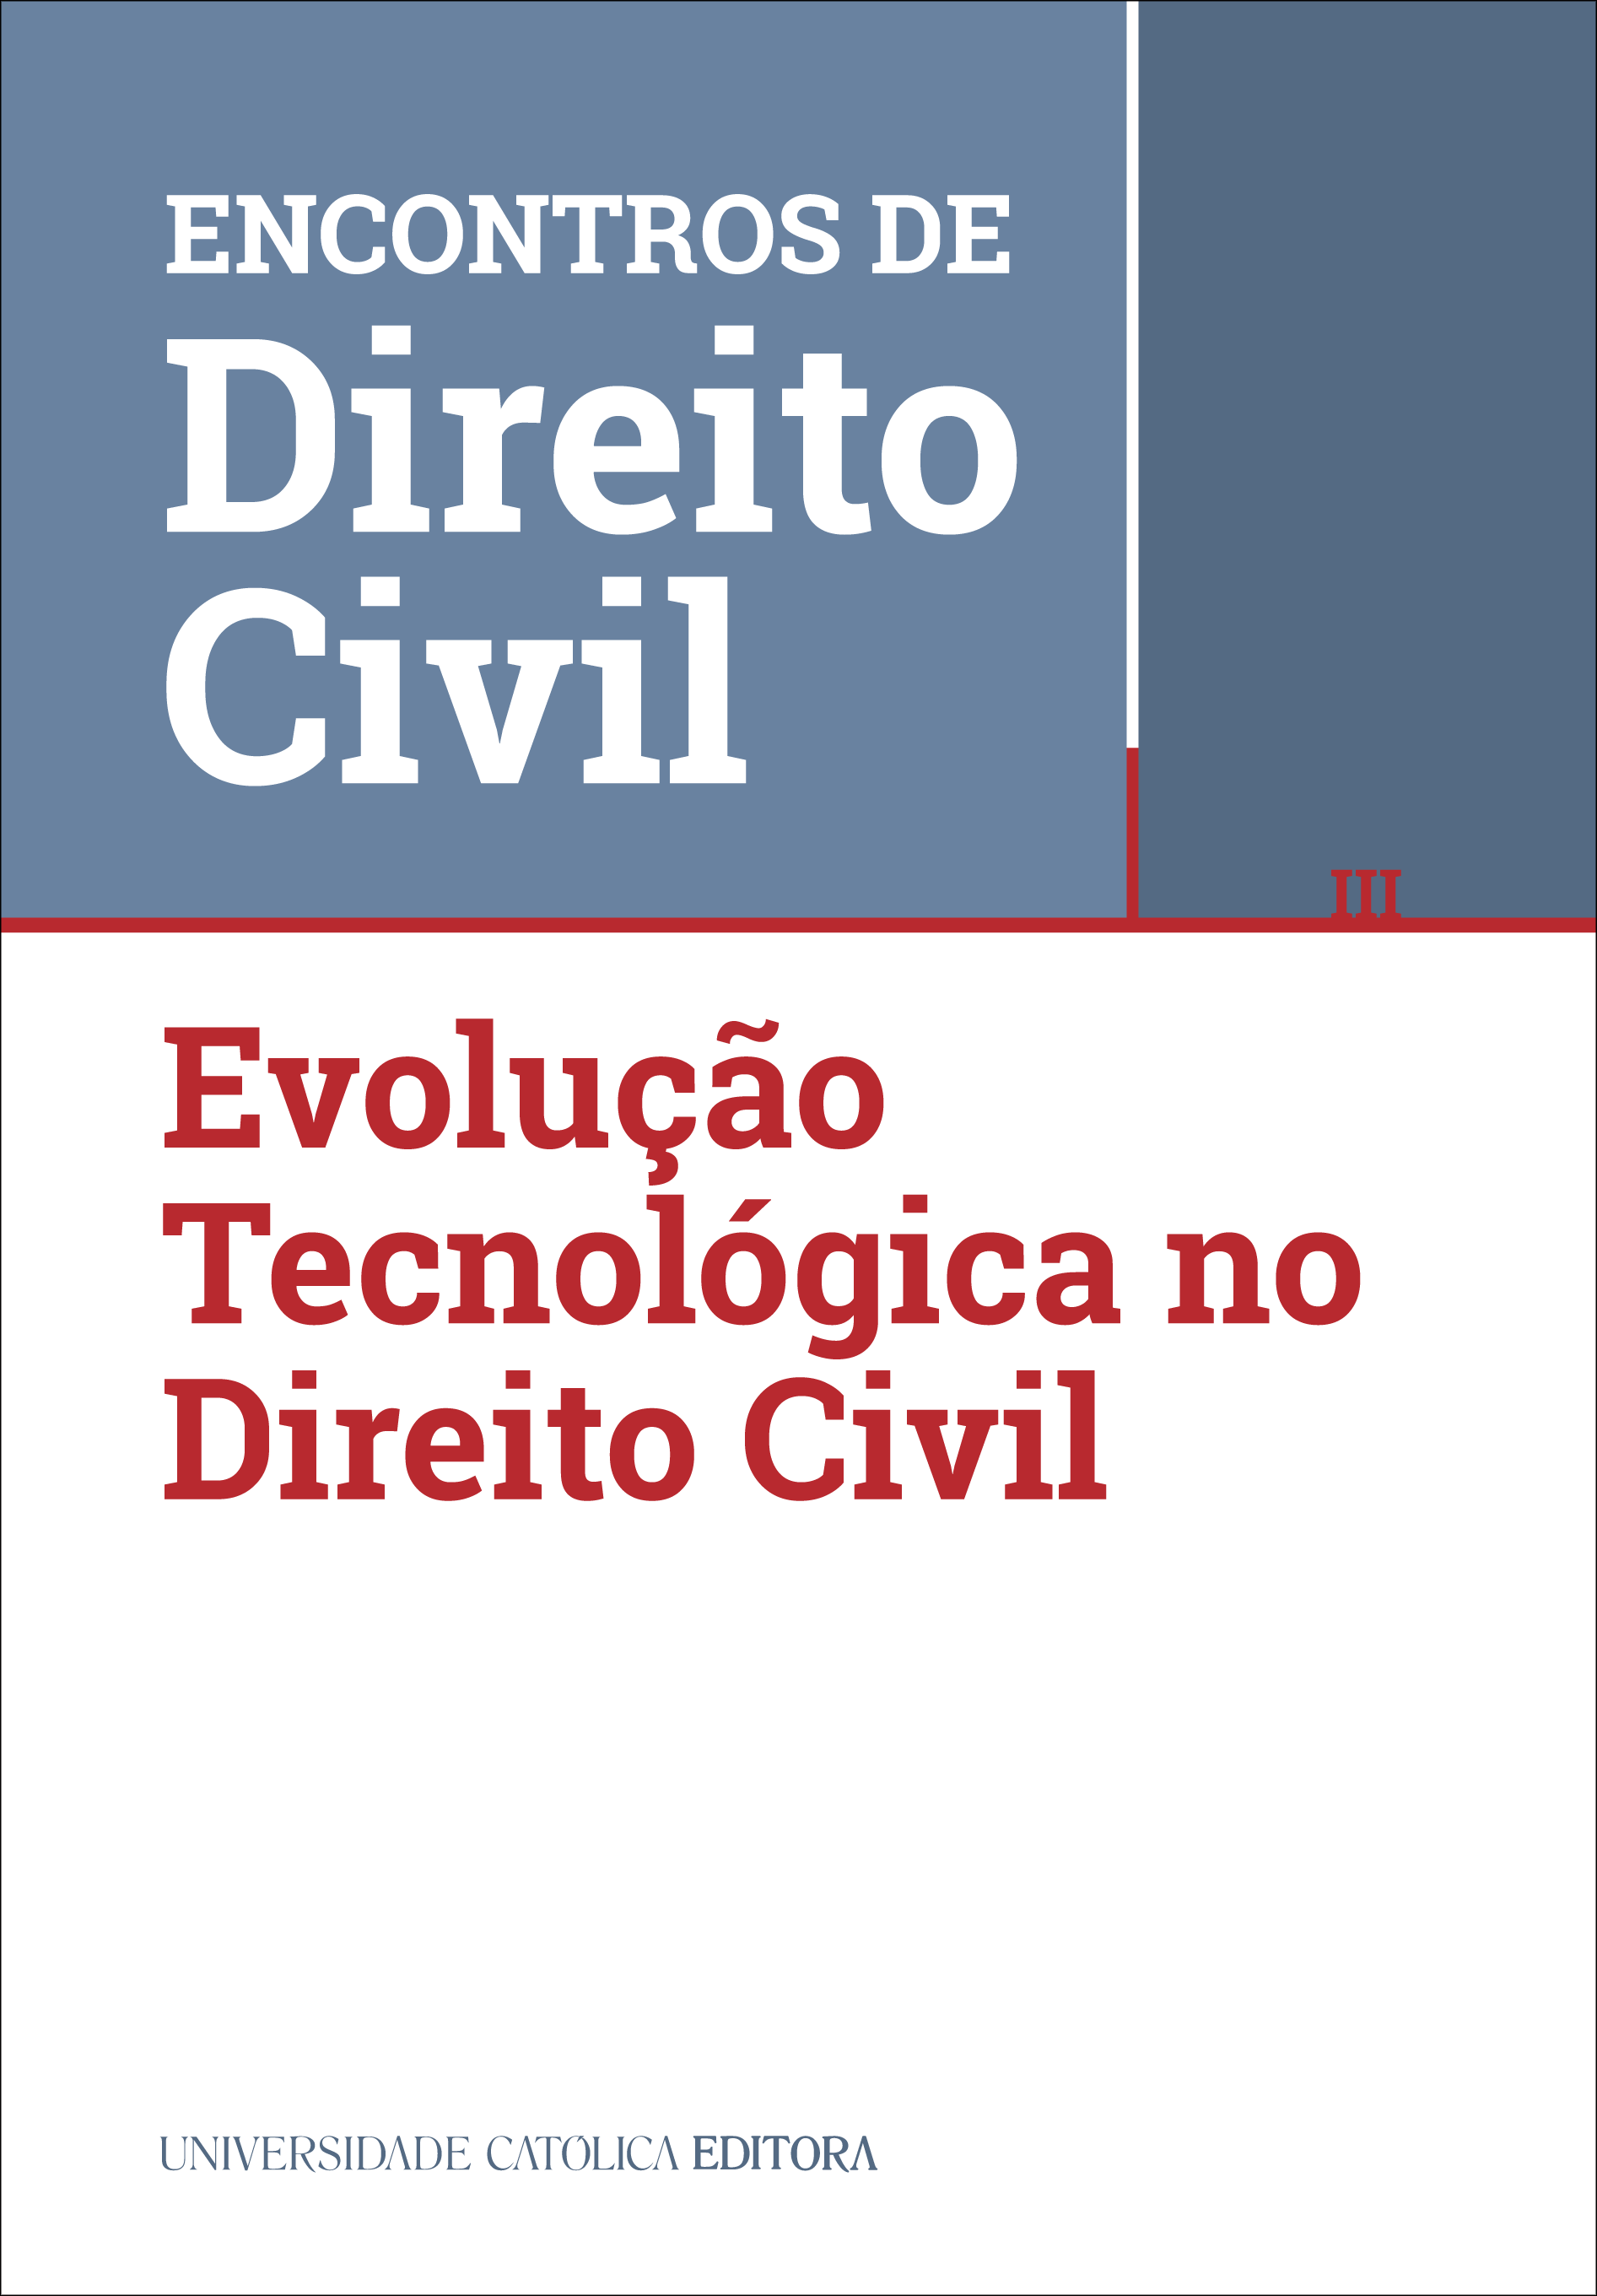 III ENCONTROS DE DIREITO CIVIL - Evolução Tecnológica no Direito Civil - Universidade Católica Editora